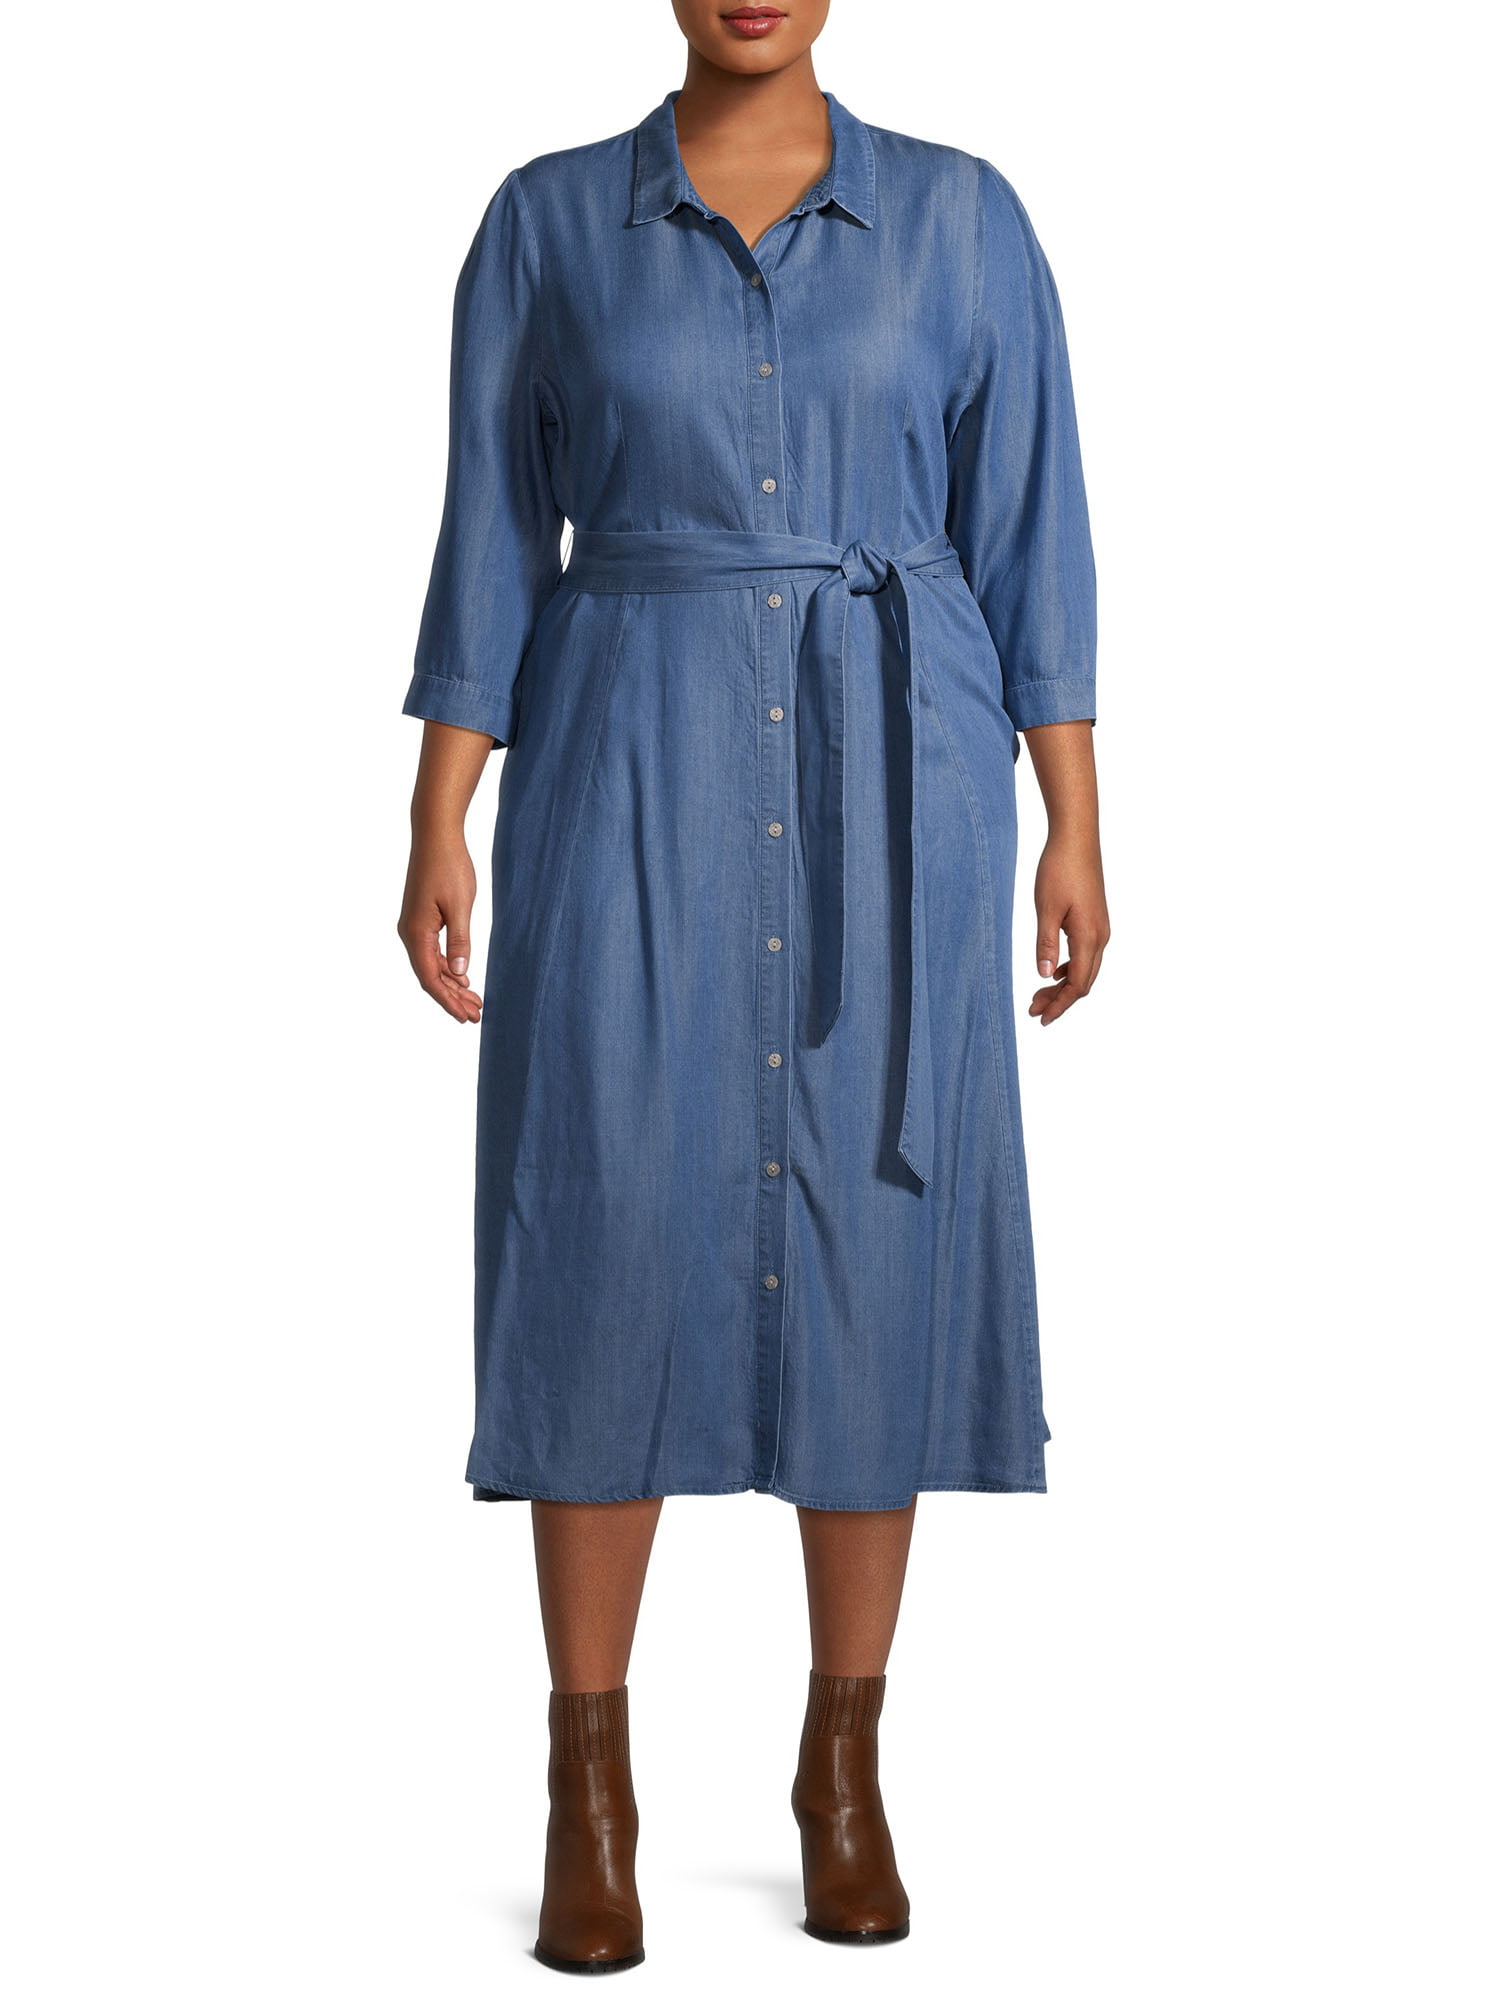 Terra & Sky Women's Plus Size Belted Shirt Dress - Walmart.com